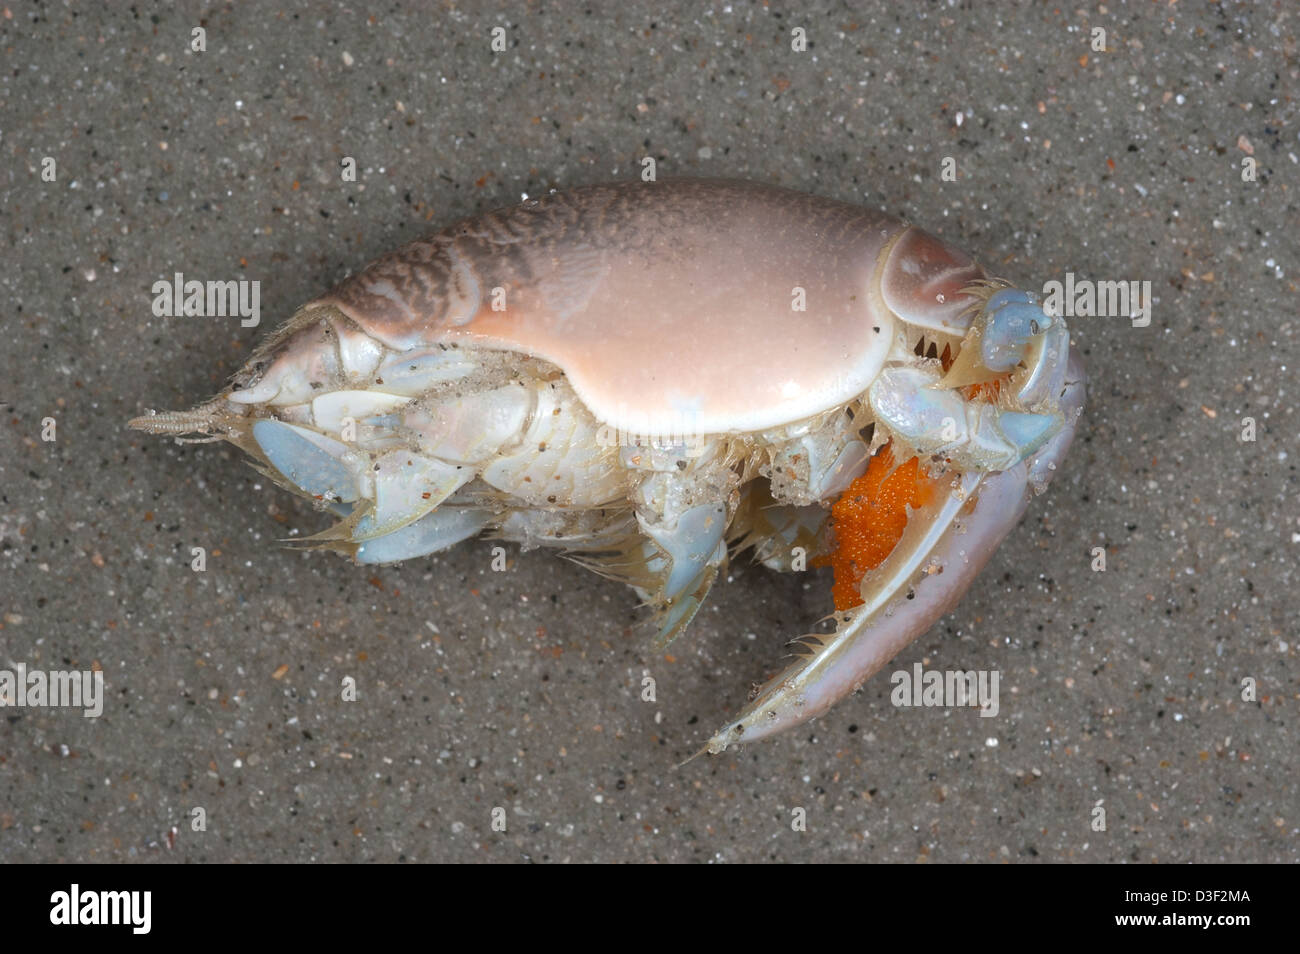 Mole crab, Emerita talpoida with bright orange eggs Stock Photo